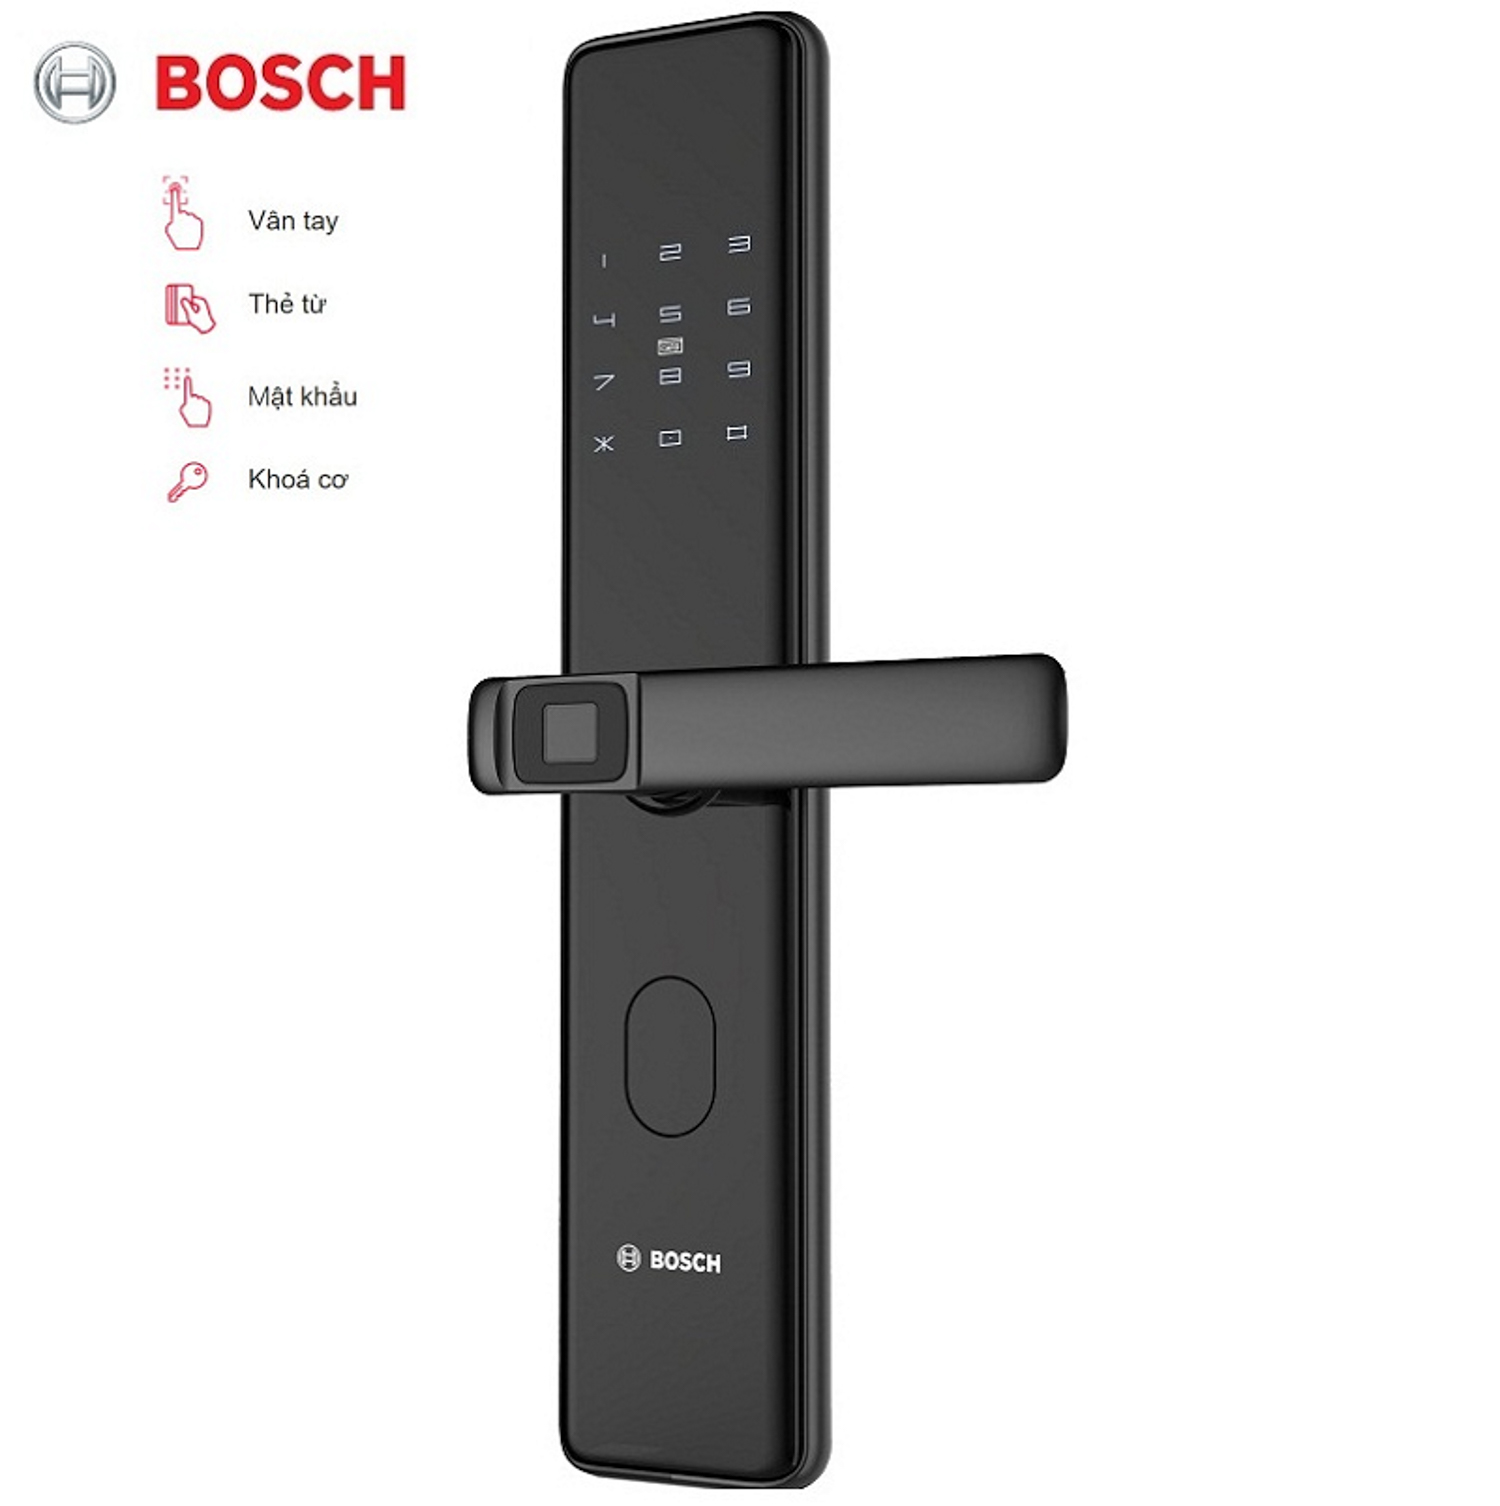 Khóa điện tử Bosch GD.ID 30B EU Black